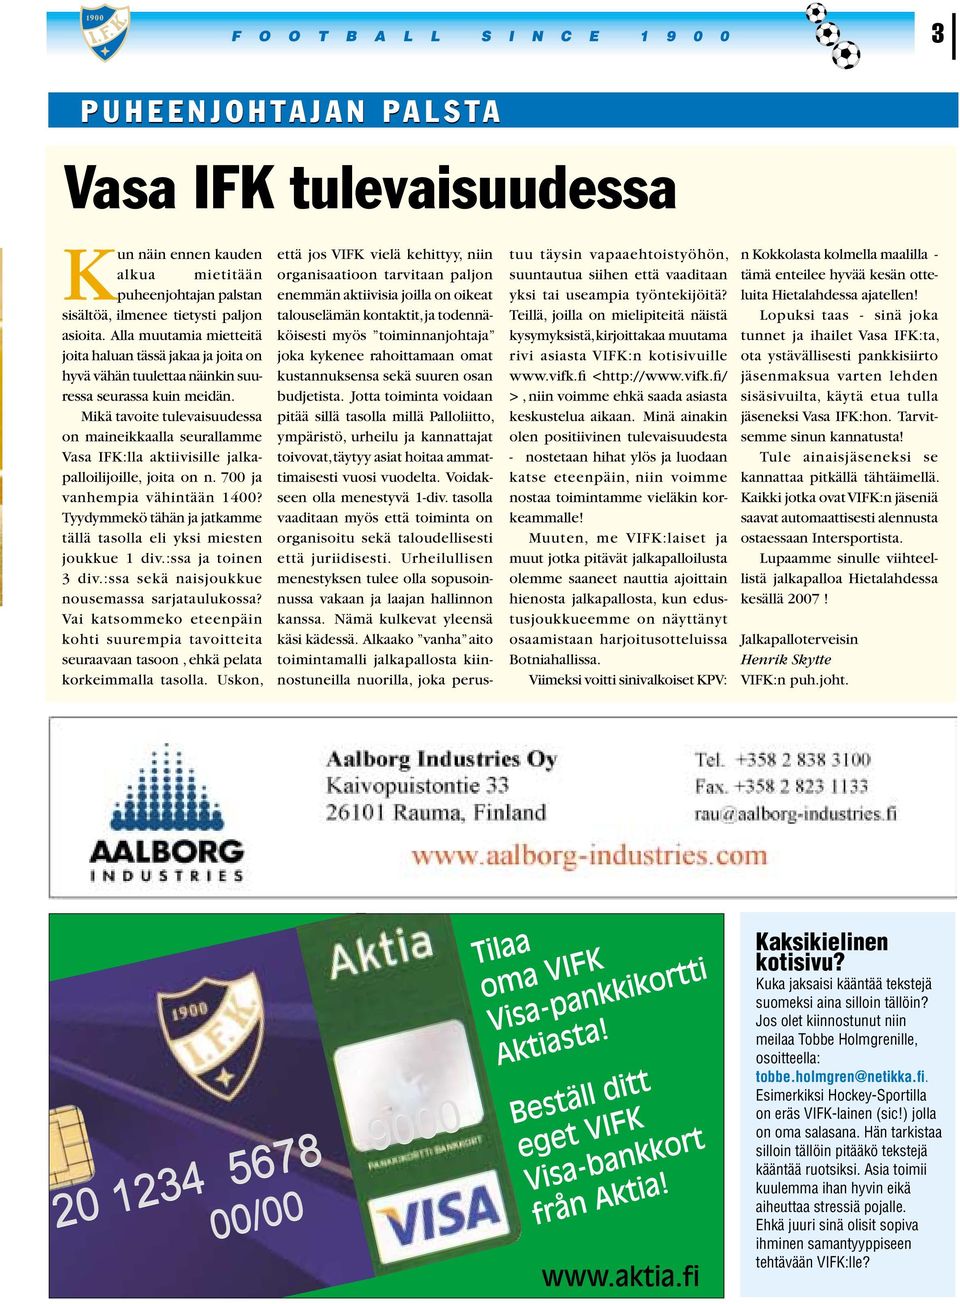 Mikä tavoite tulevaisuudessa on maineikkaalla seurallamme Vasa IFK:lla aktiivisille jalkapalloilijoille, joita on n. 700 ja vanhempia vähintään 1400?